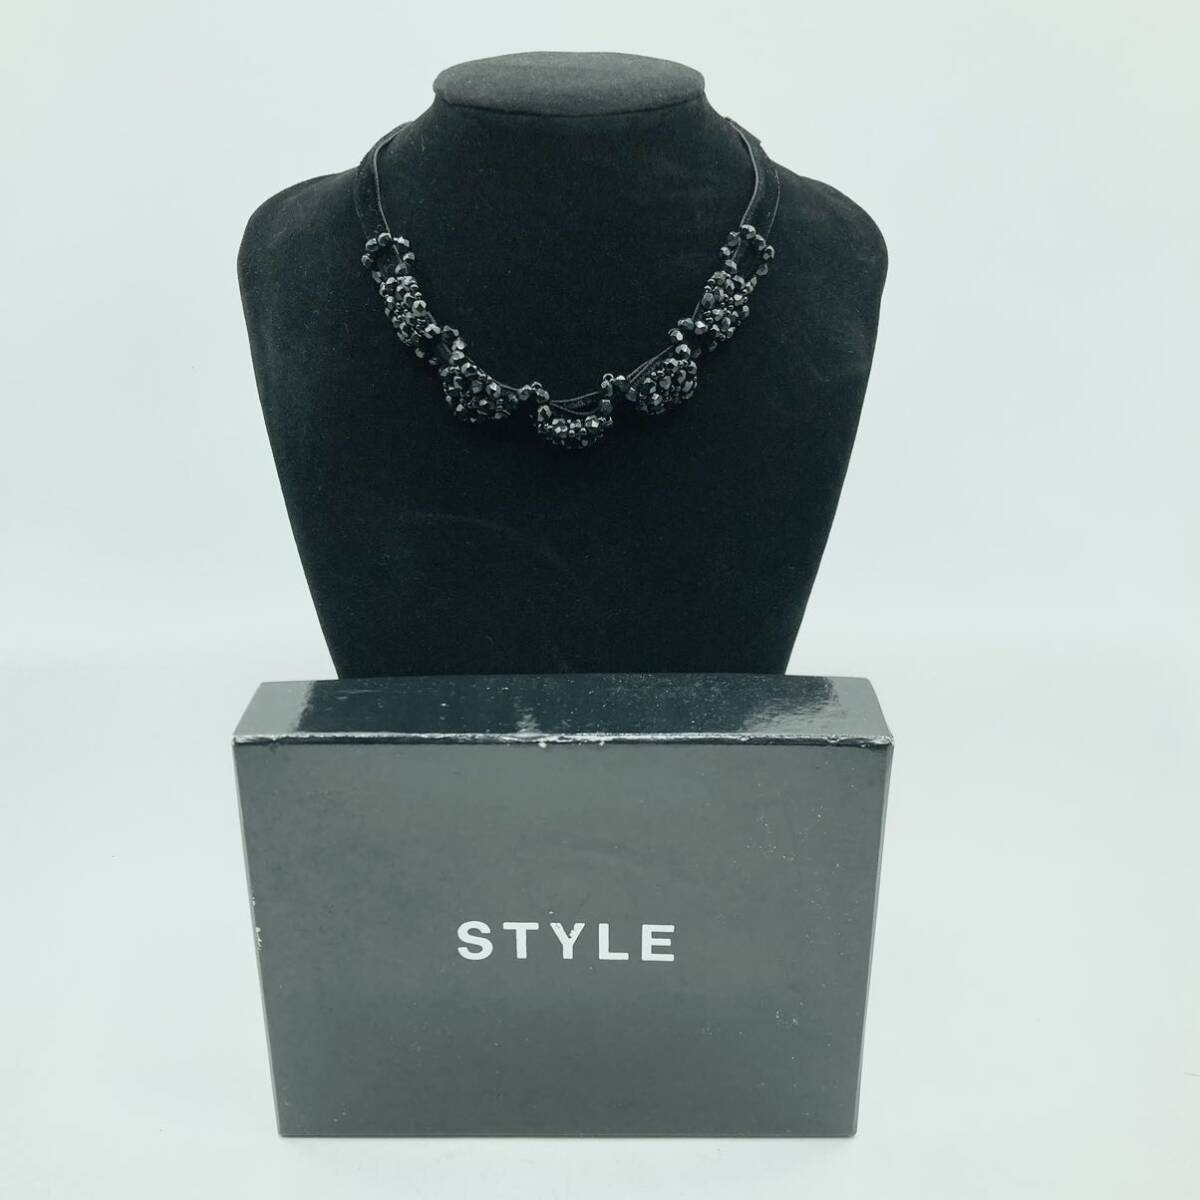 s0308607 STYLE スタイル ブラックオニキス チョーカー アクセサリー ネックレス 美品 中古品の画像1